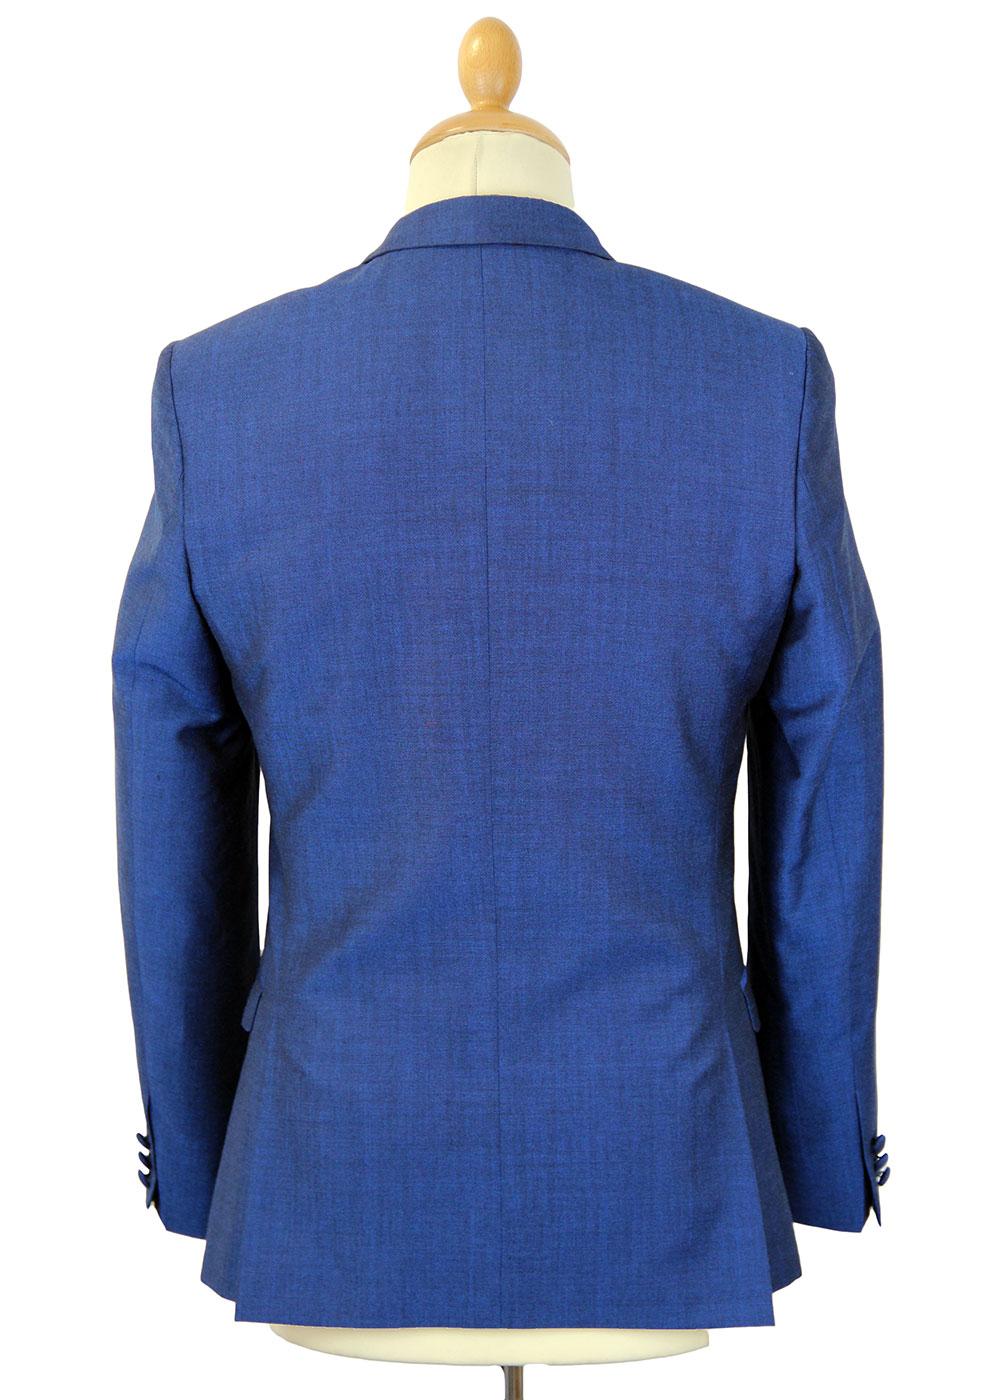 Madcap England Blue Flame Retro Mod Mohair Tonic Suit